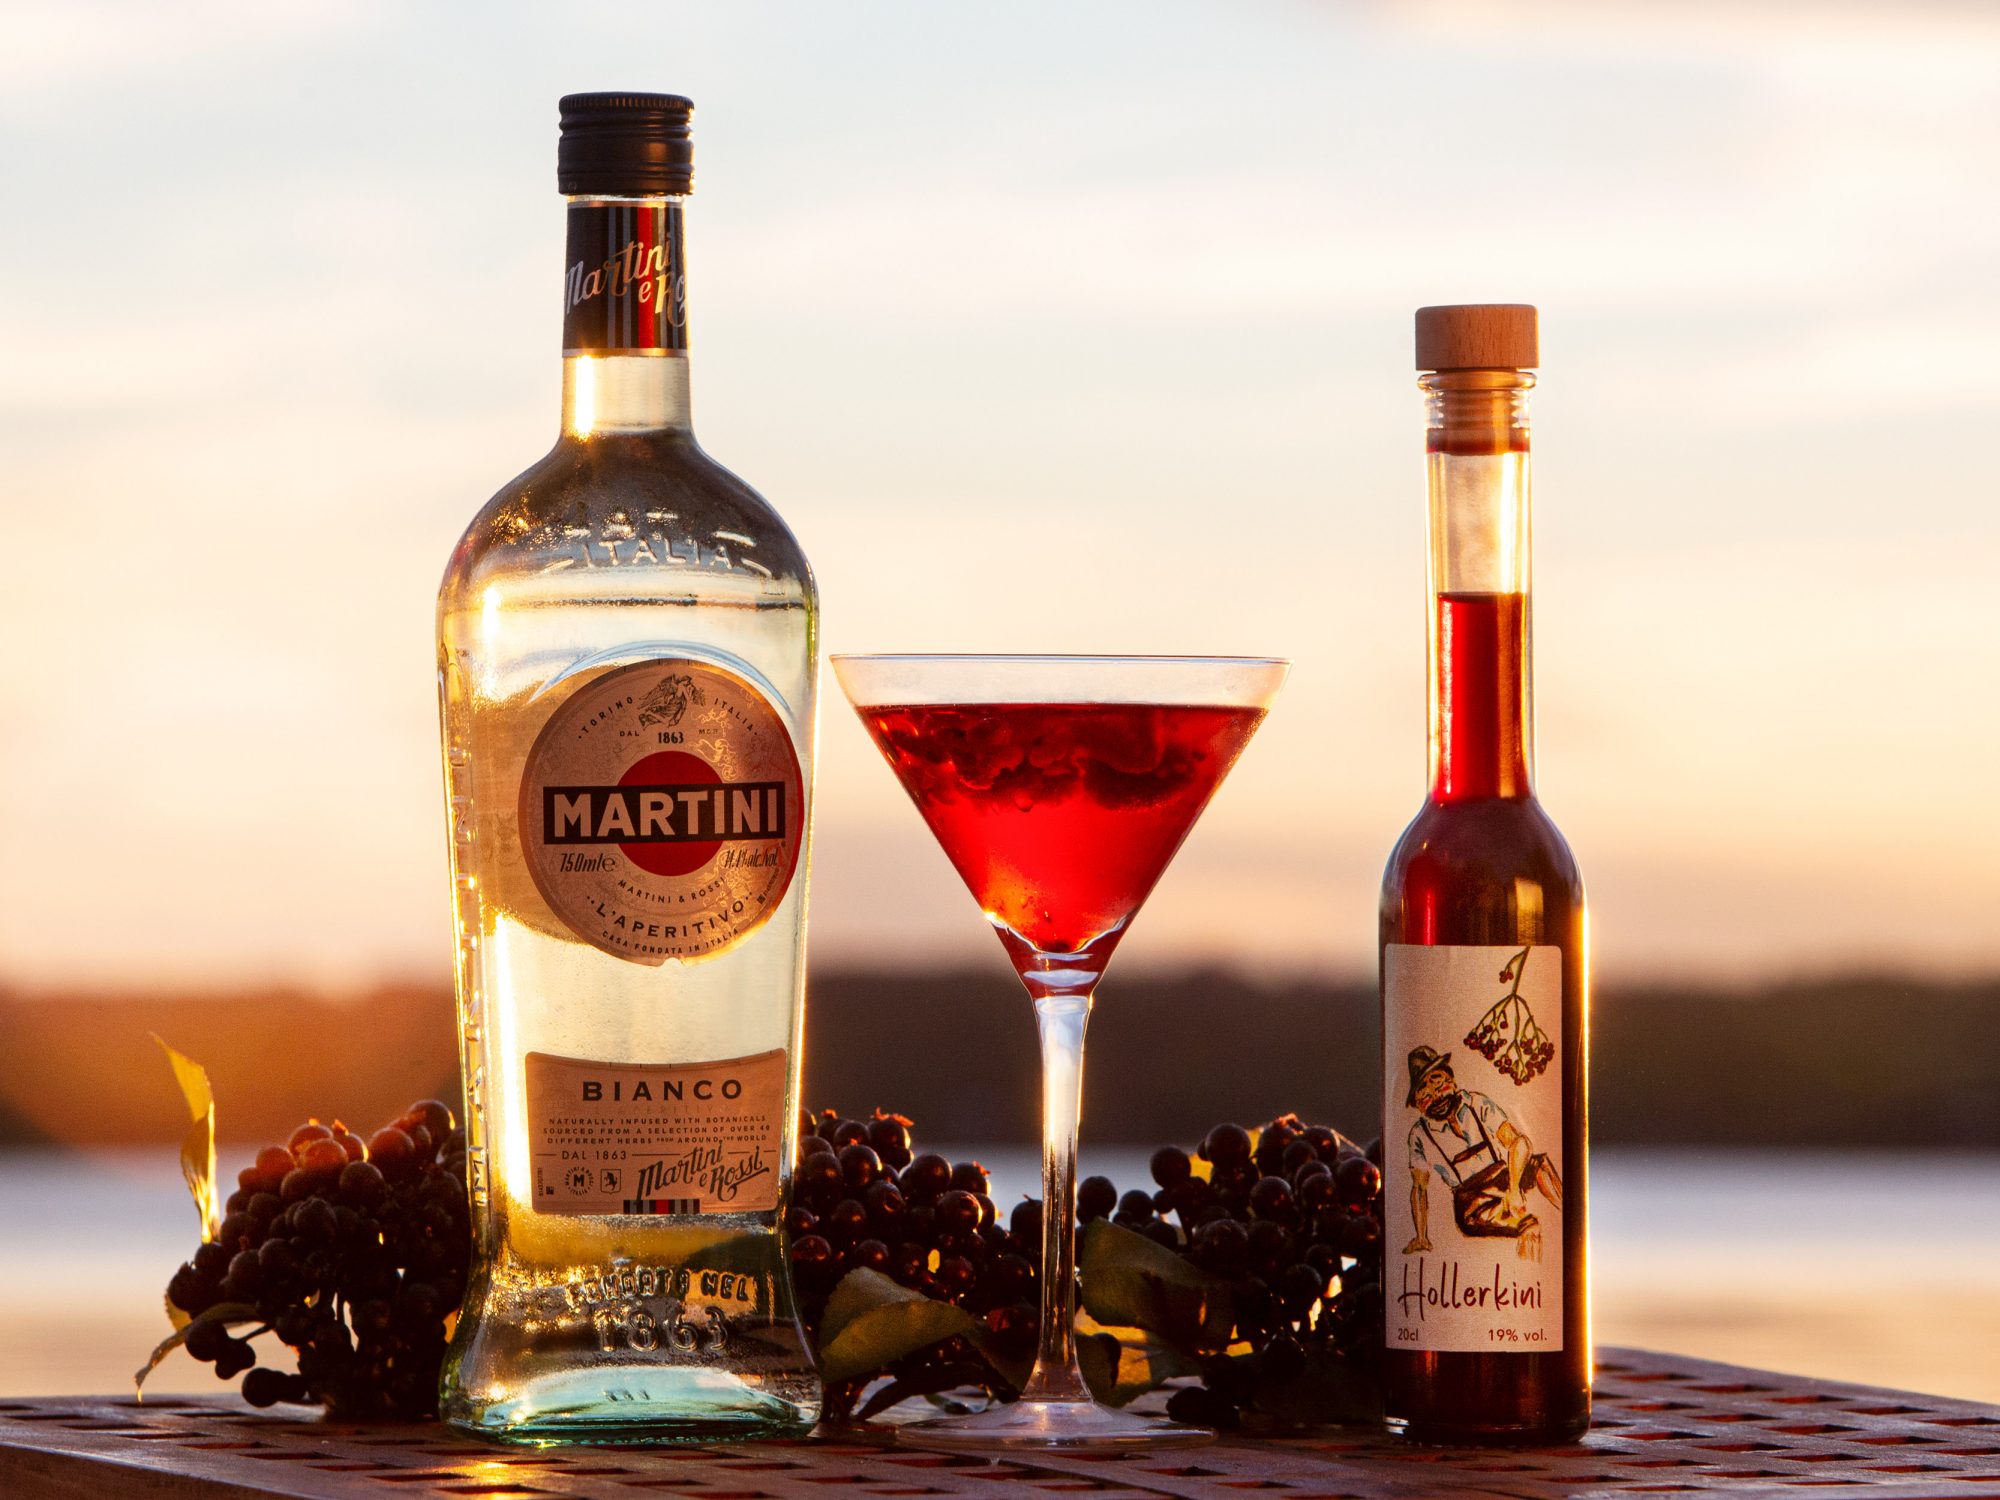 Eine Flascche Sekt links, eine Flasche Hollerkini rechts und ein Daikini im Martiniglaß in der Mitte auf einem Holztisch vo dem Sonnenuntergang beim Ammersee.